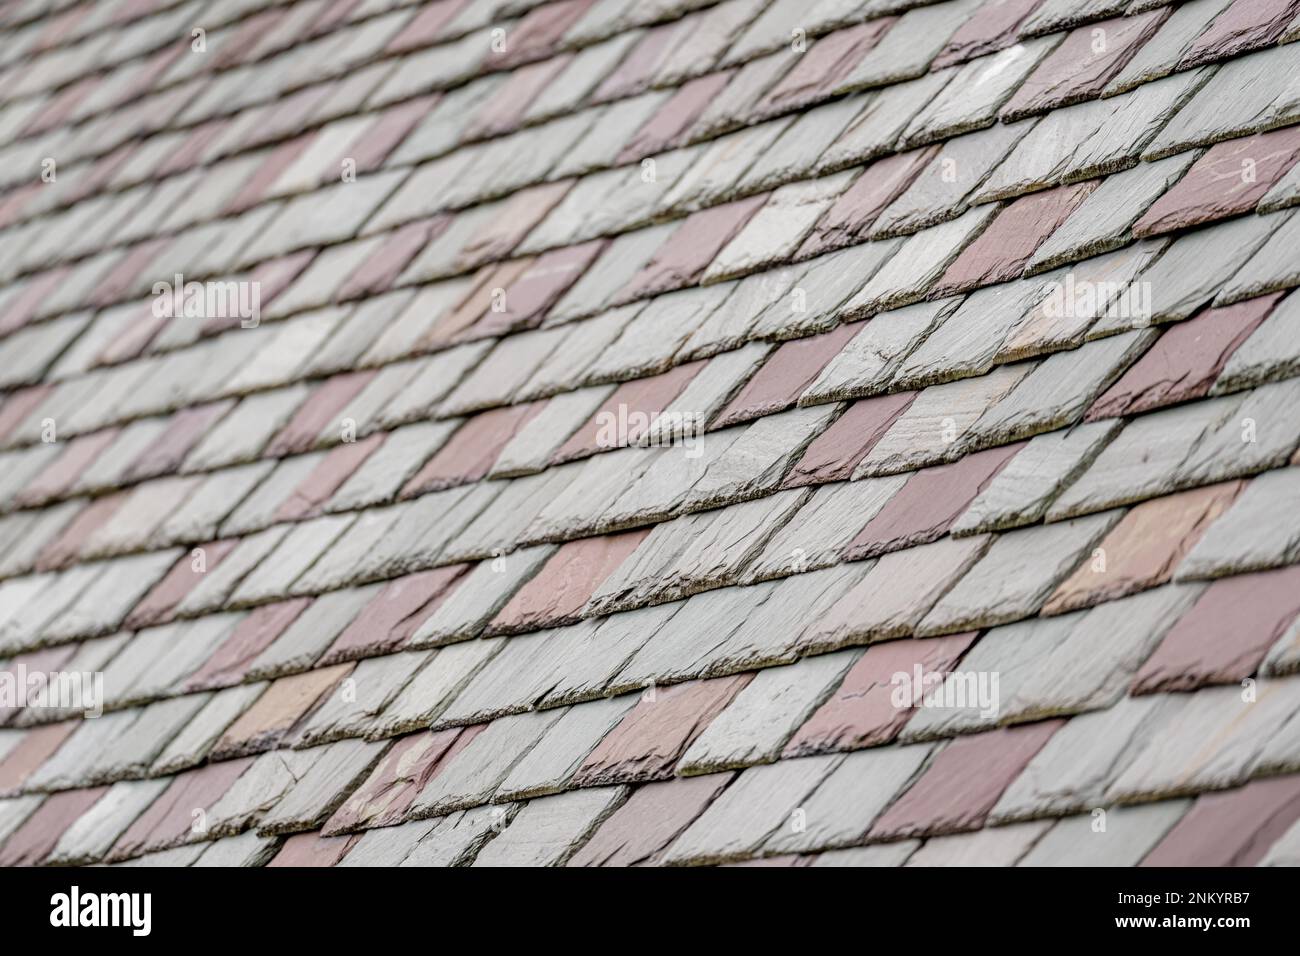 Tuiles de toiture en ardoise sur un bâtiment historique. Matériau de couverture attrayant et durable. Banque D'Images